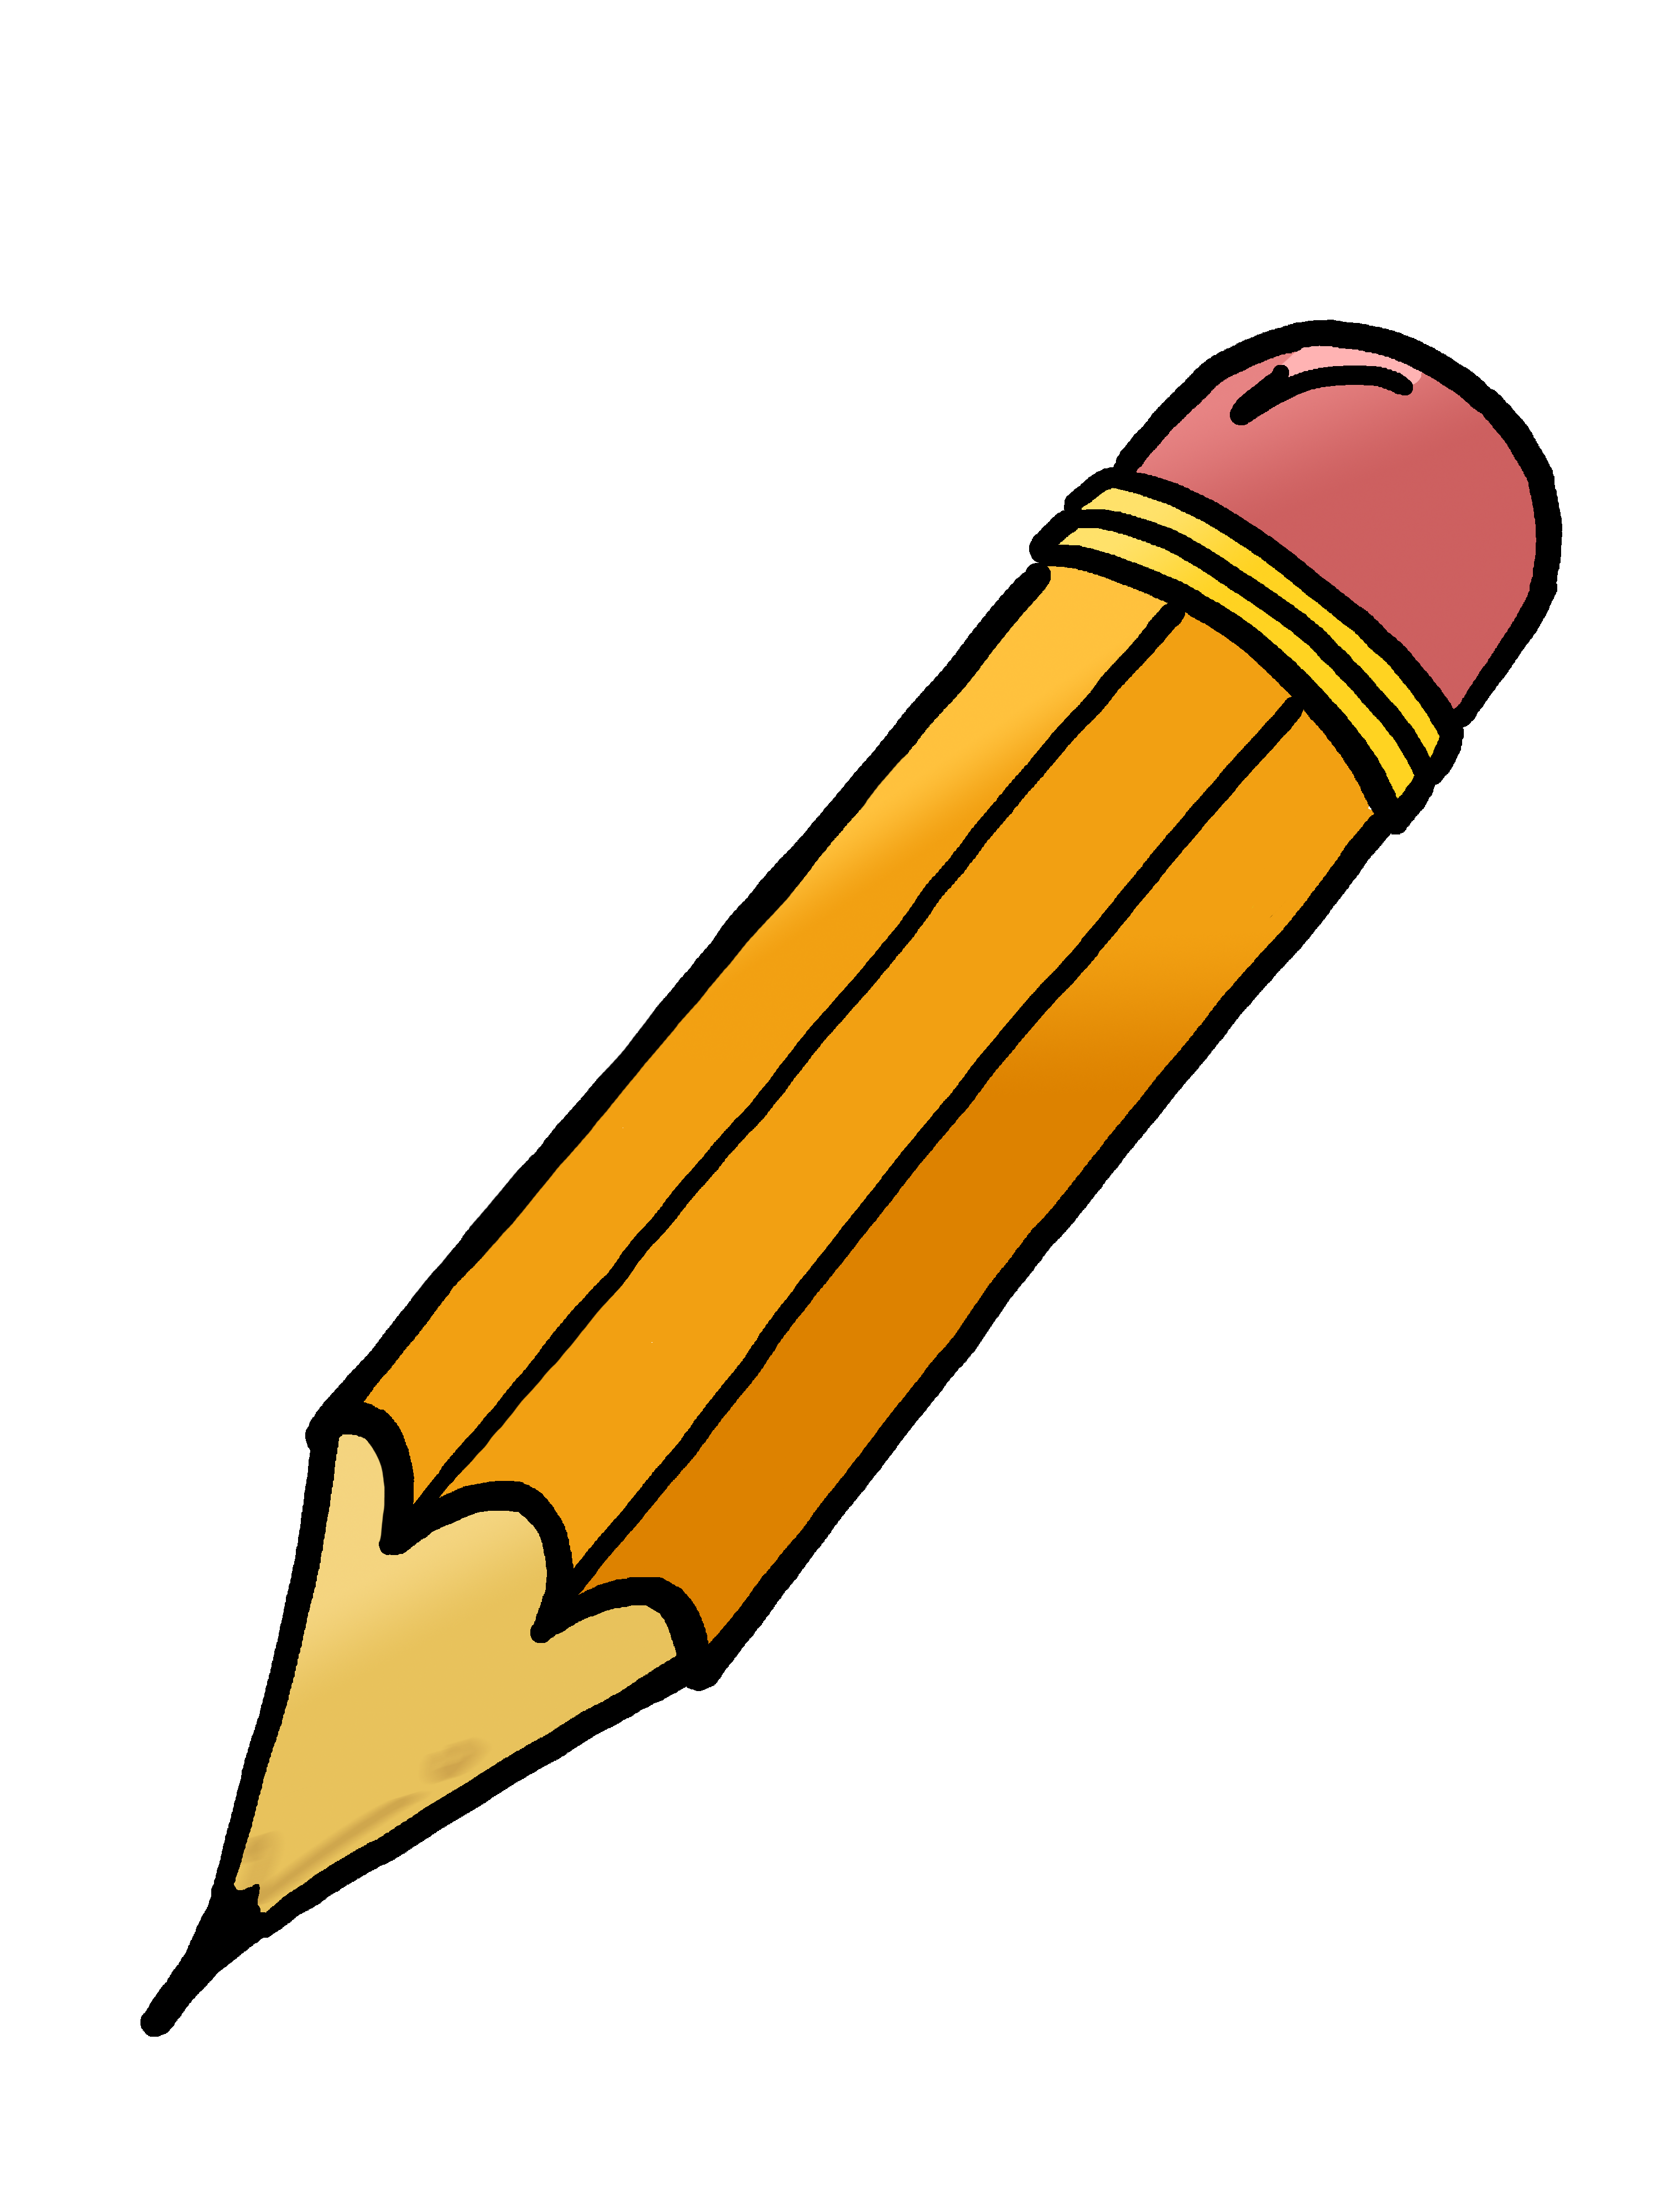 Pencil Case Clipart